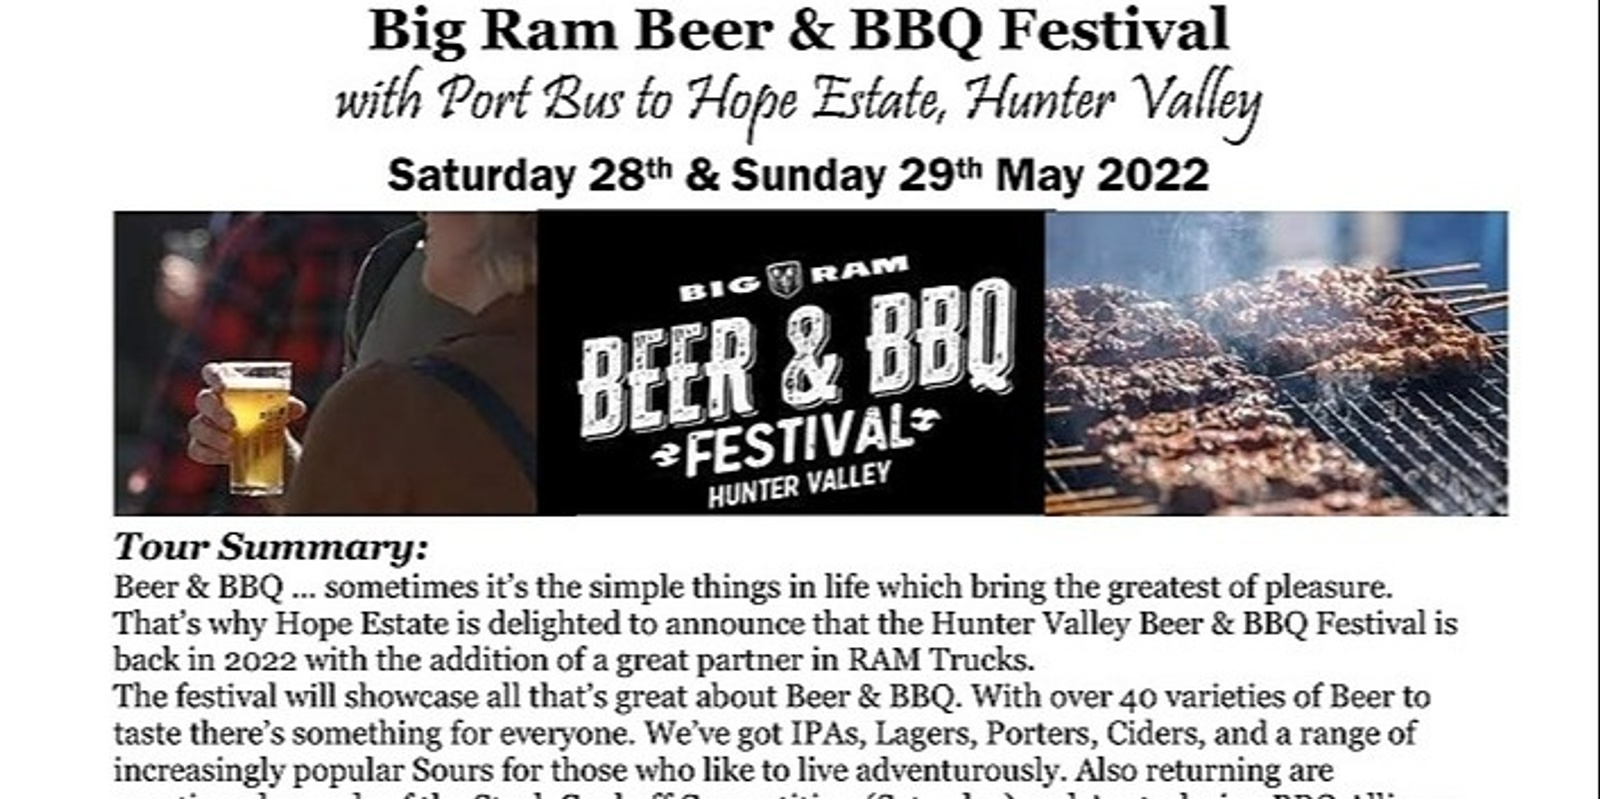 Banner image for Big Ram Beer & BBQ Festival